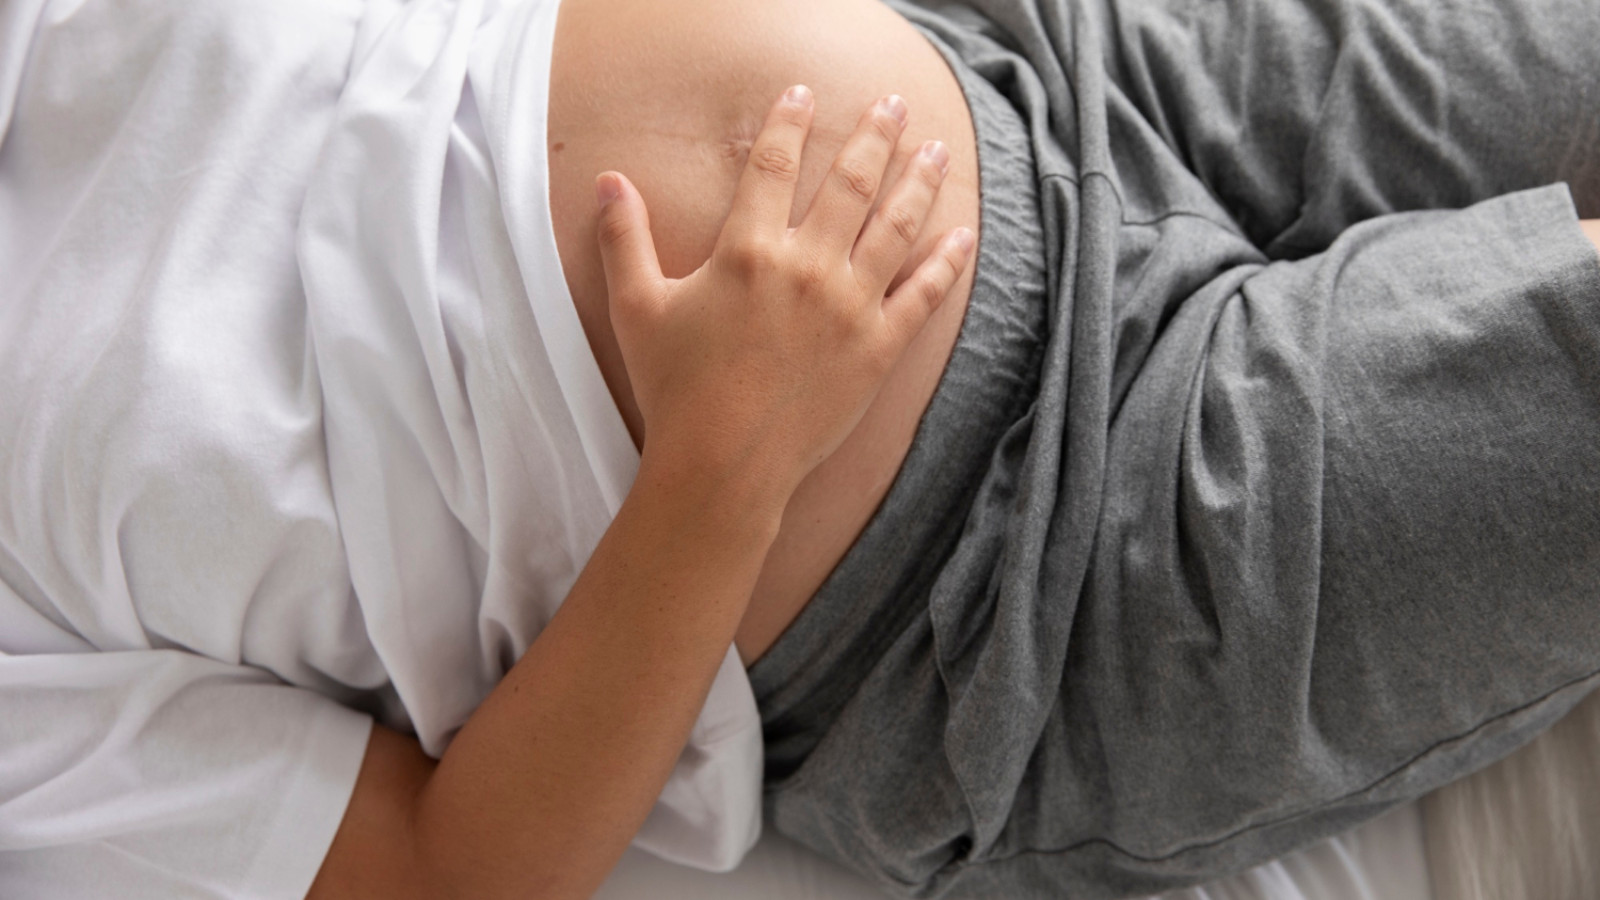 Prurito in gravidanza: le possibili cause e quando preoccuparsi